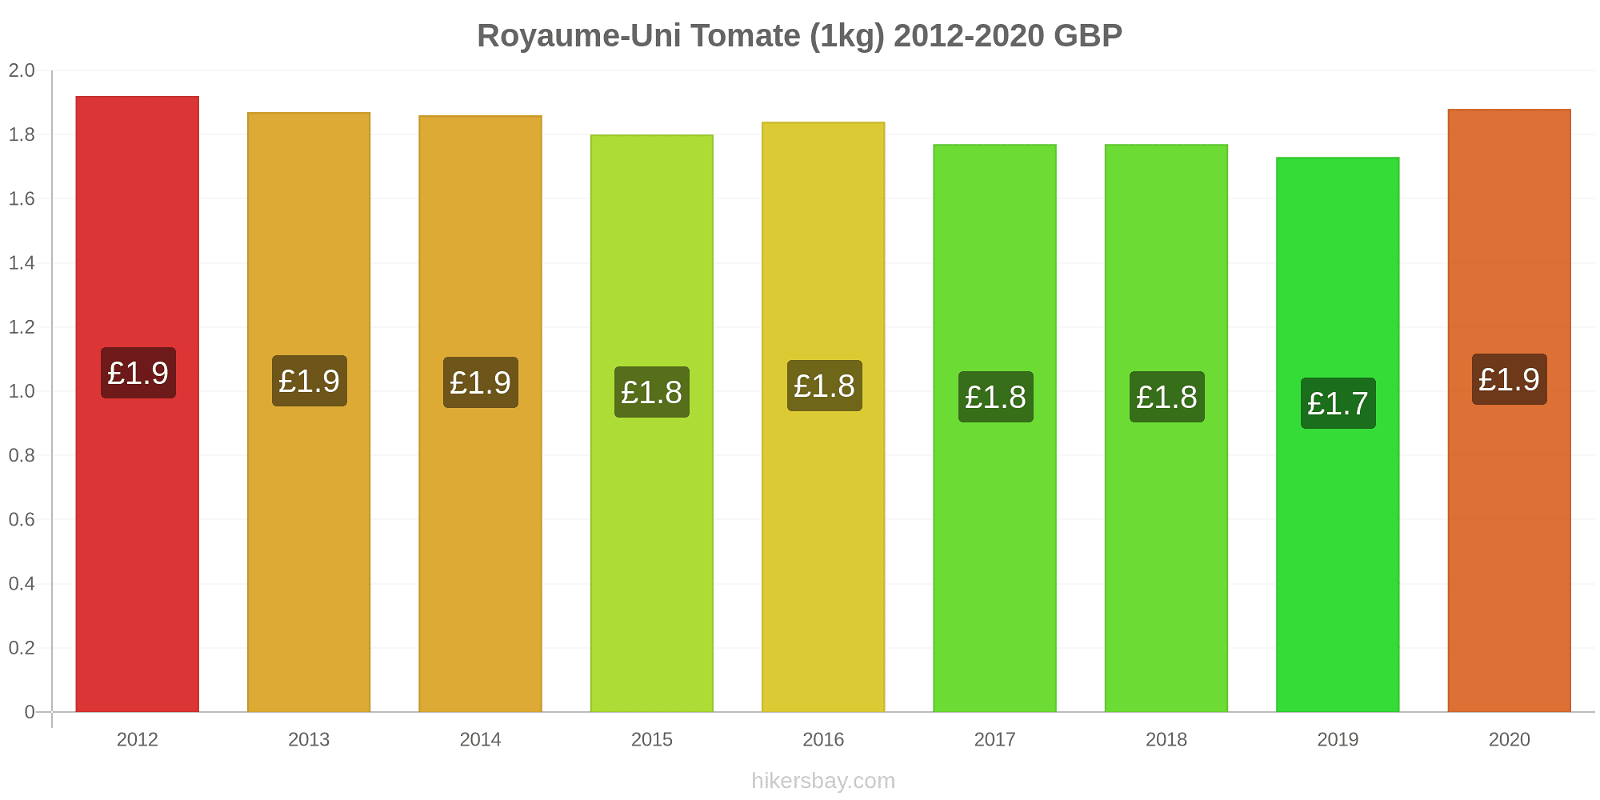 Royaume-Uni changements de prix Tomate (1kg) hikersbay.com